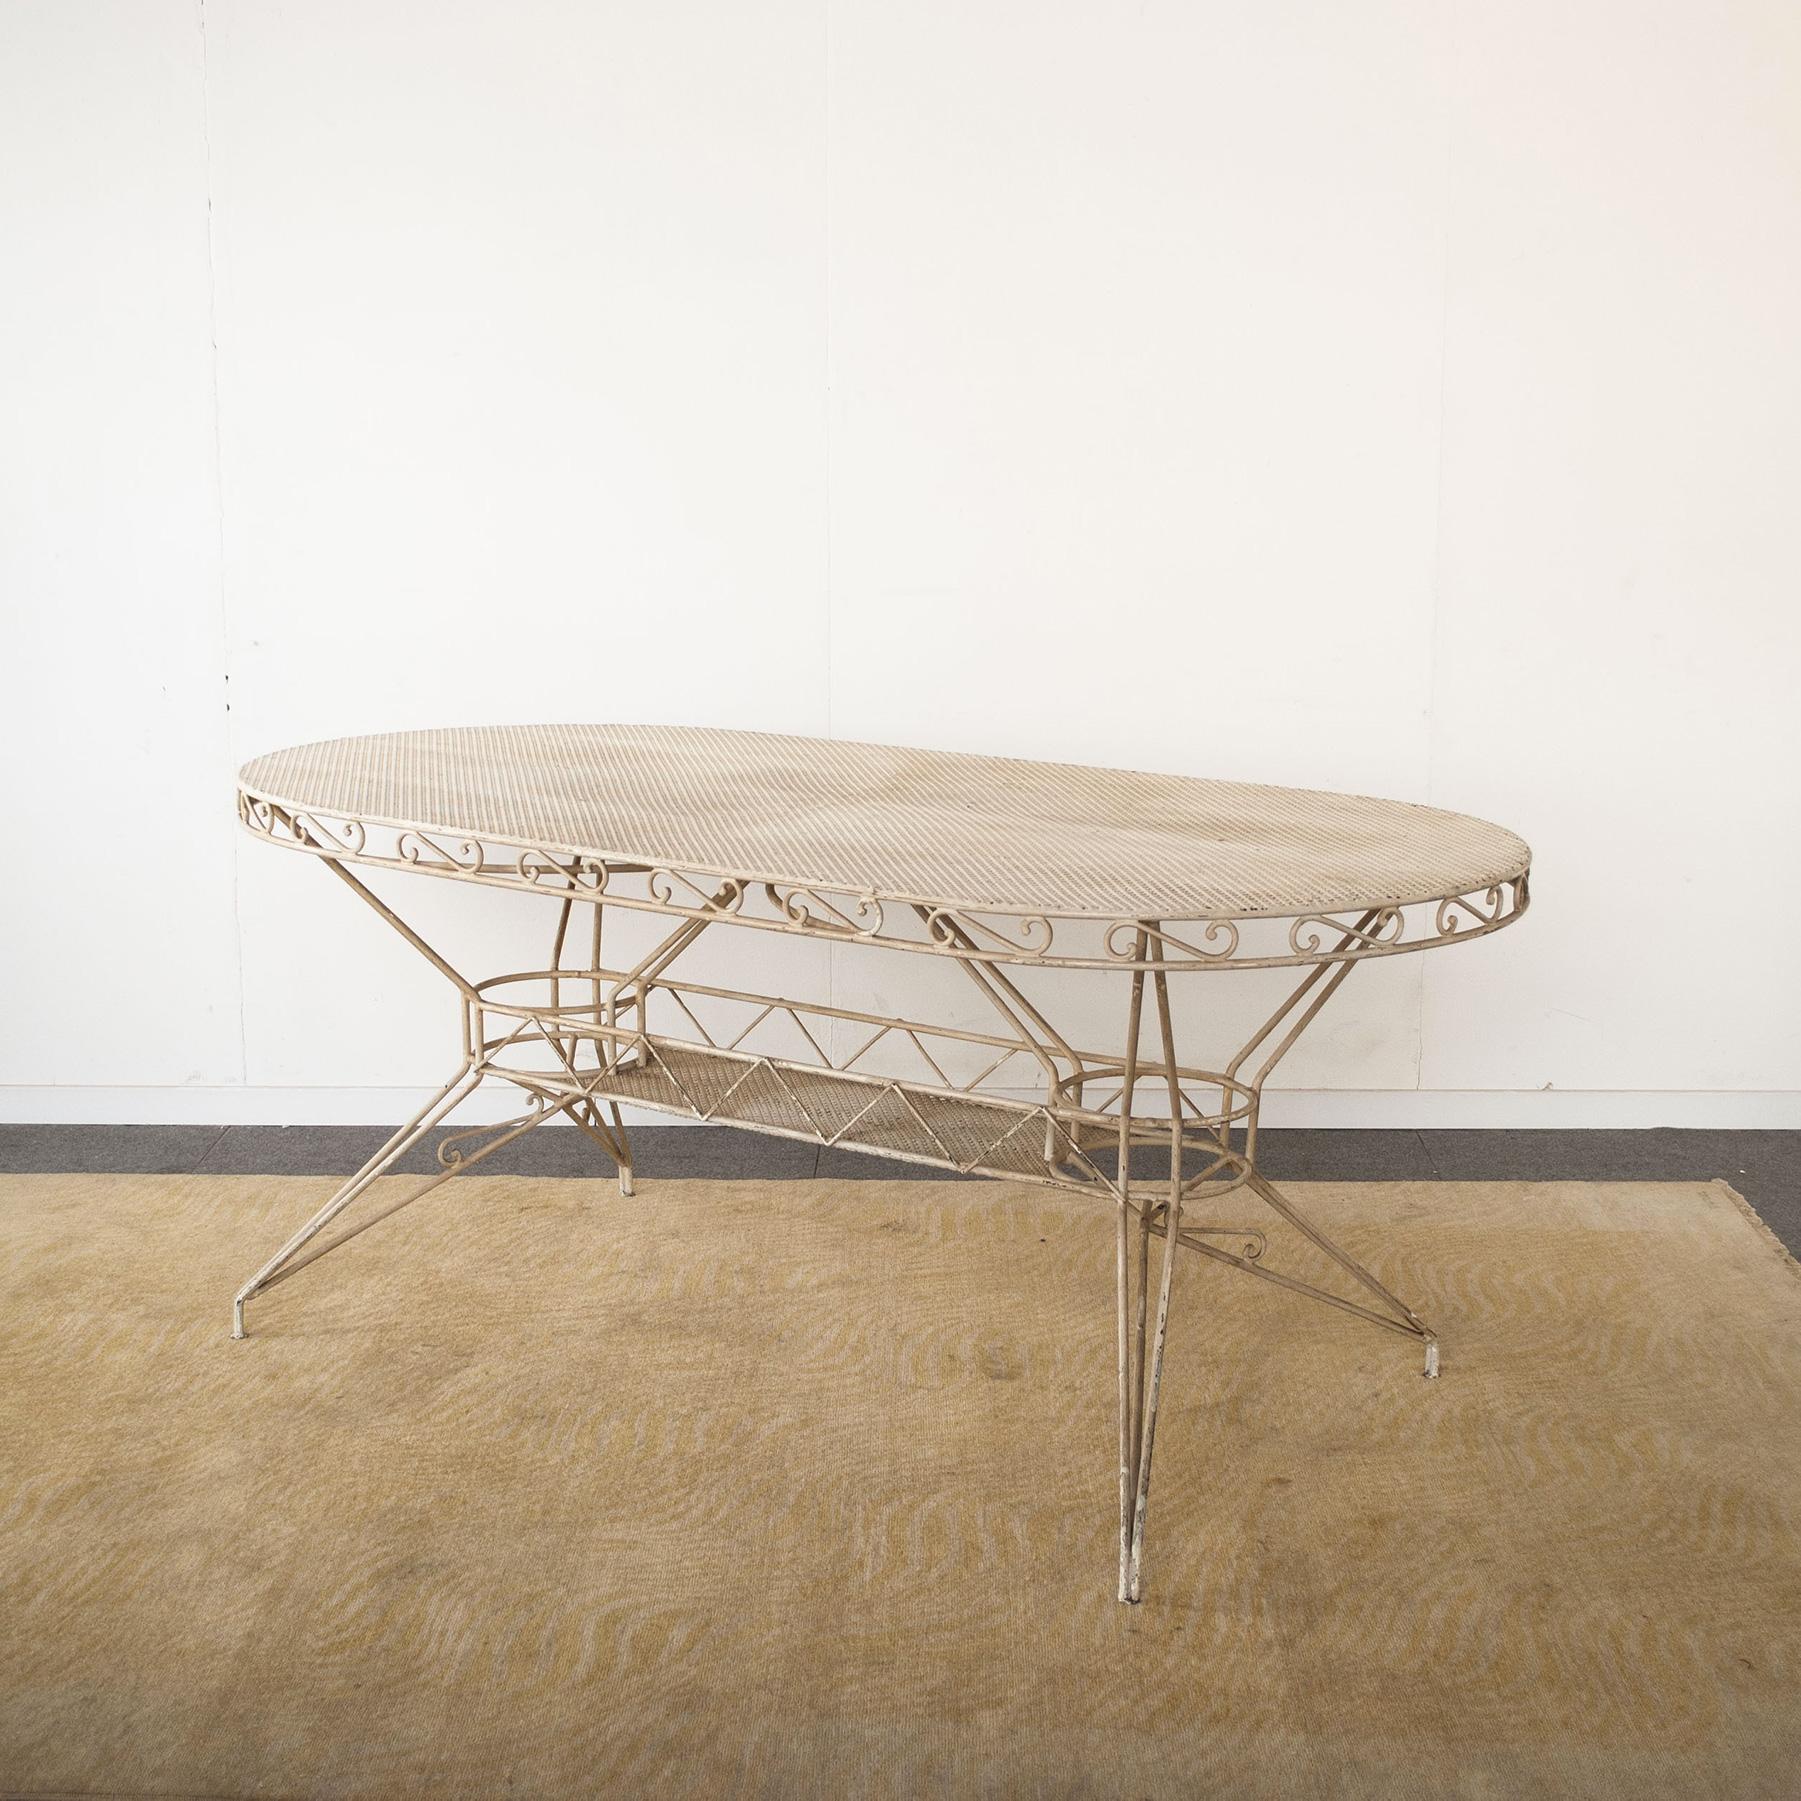 Mid-Century Modern Wrought Iron Table from the 1950s Casa E Giardino Gio Ponti Style